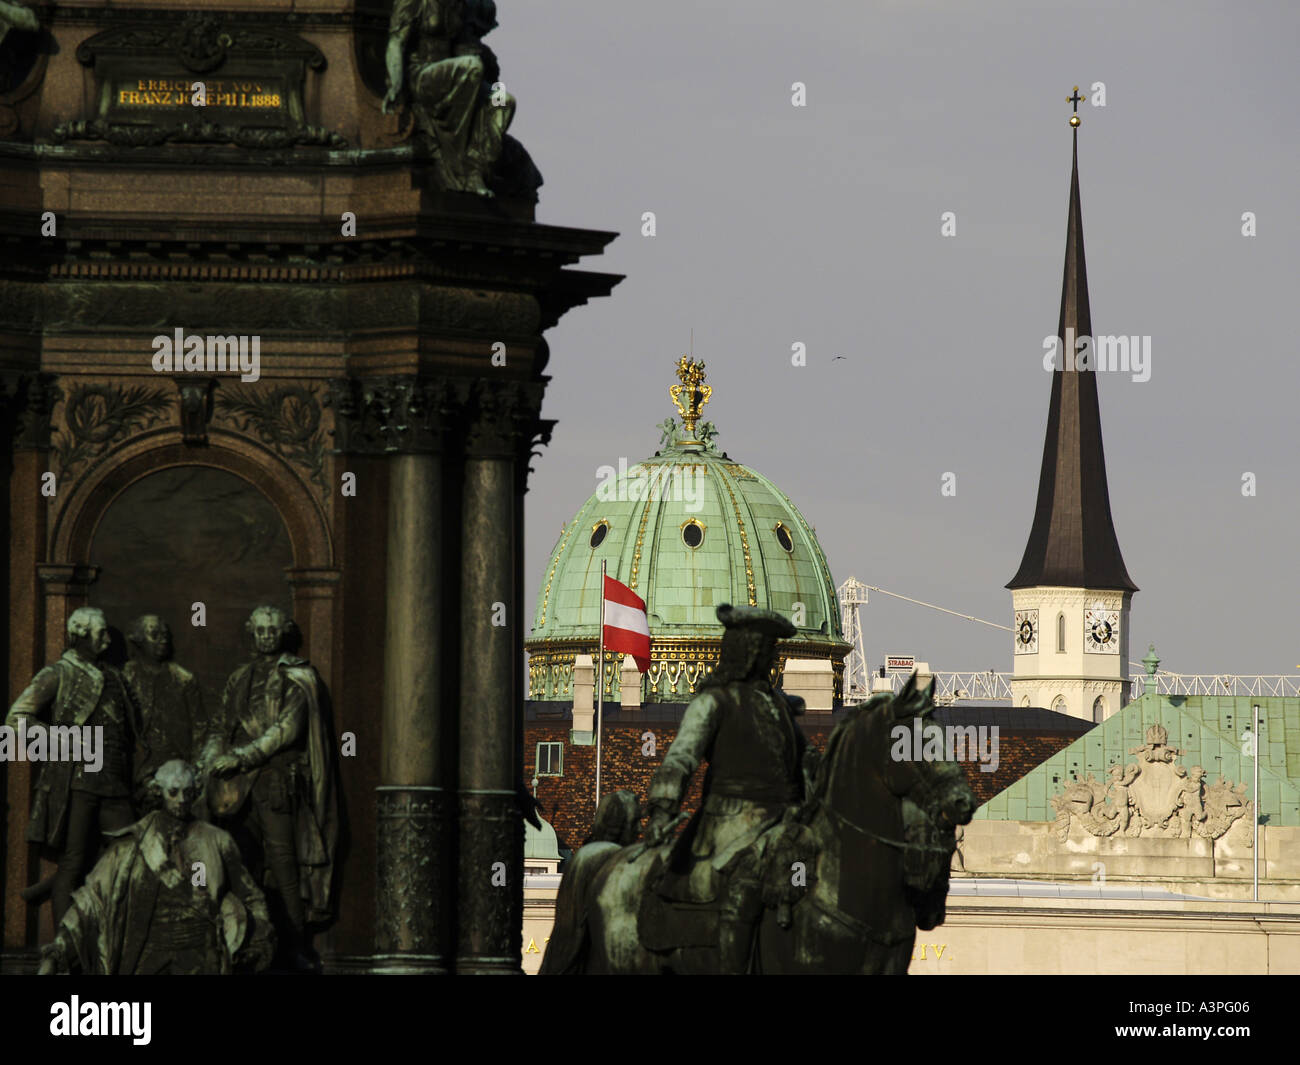 Vue de la première circonscription d'autriche Hofburg flagg Banque D'Images